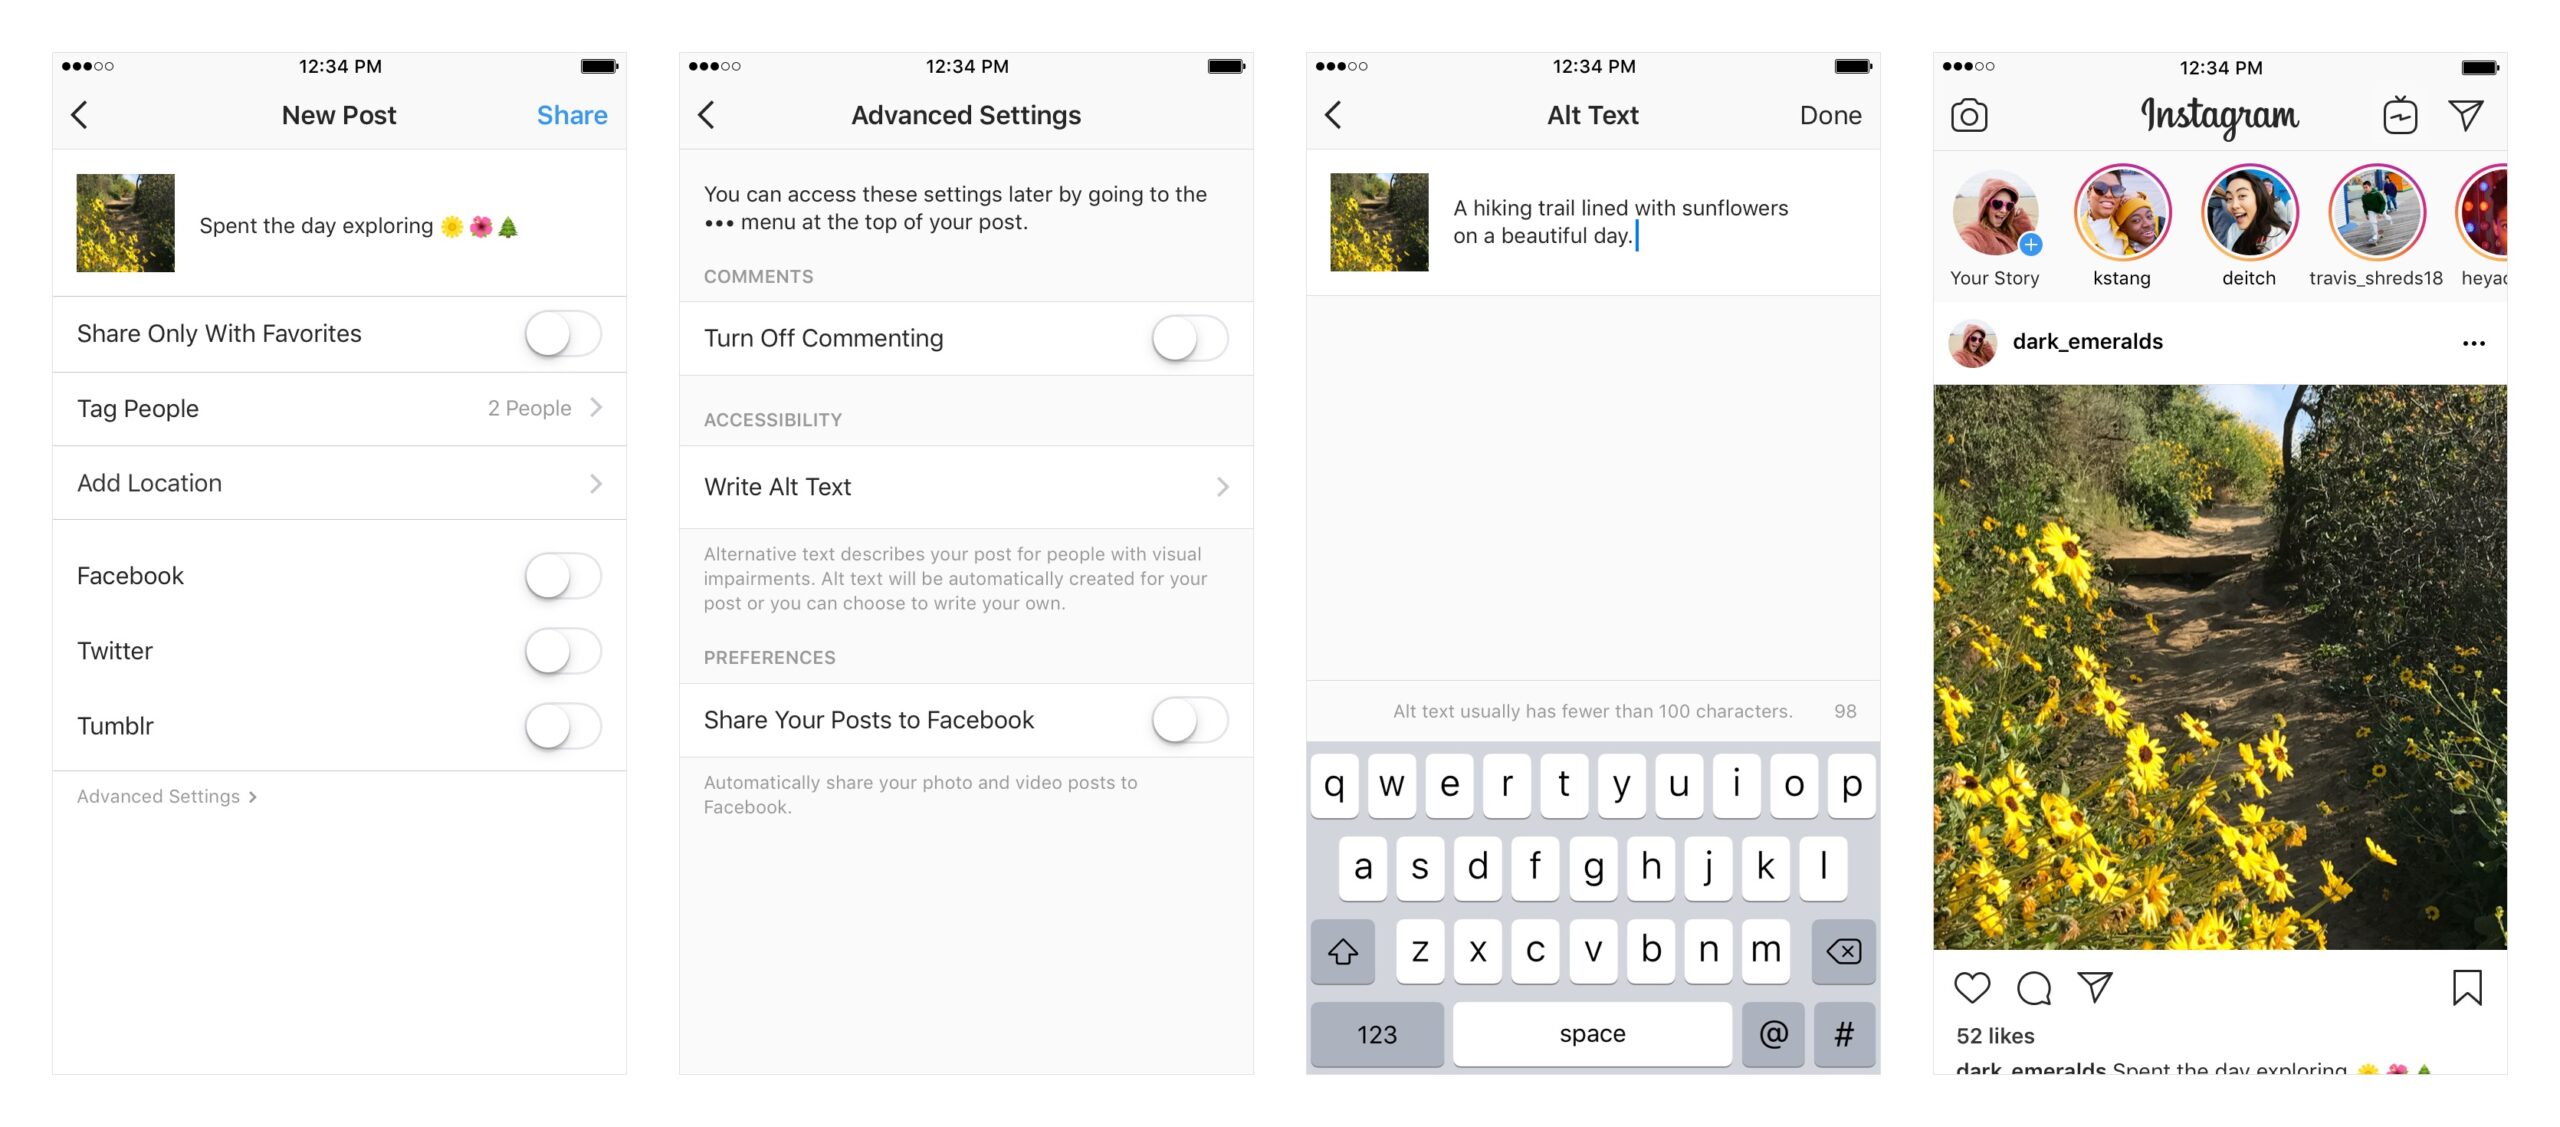 Bild zeigt die Funktion für ALT-Texte in Instagram. Dort lassen sich für Feed-Postings ALT-Texte erstellen. 